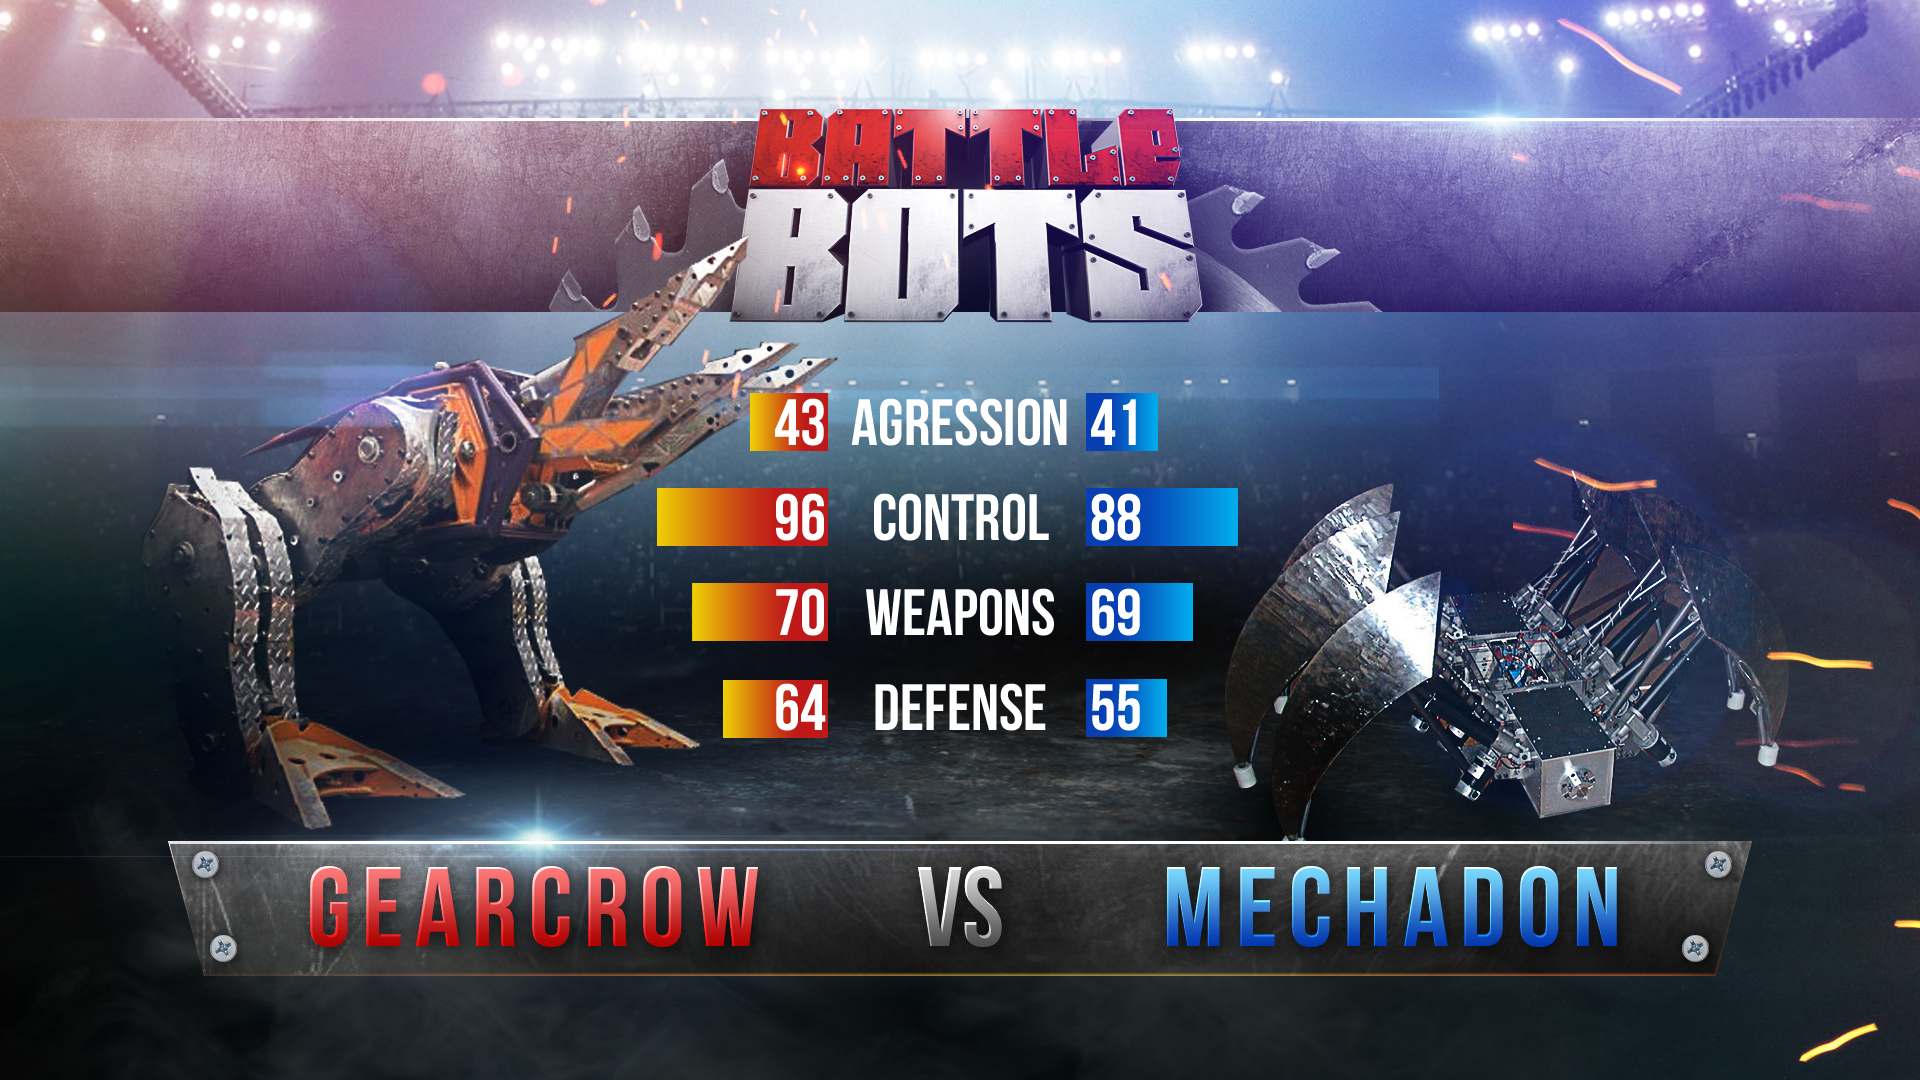 BattleBots_am_metal_matchup.jpg